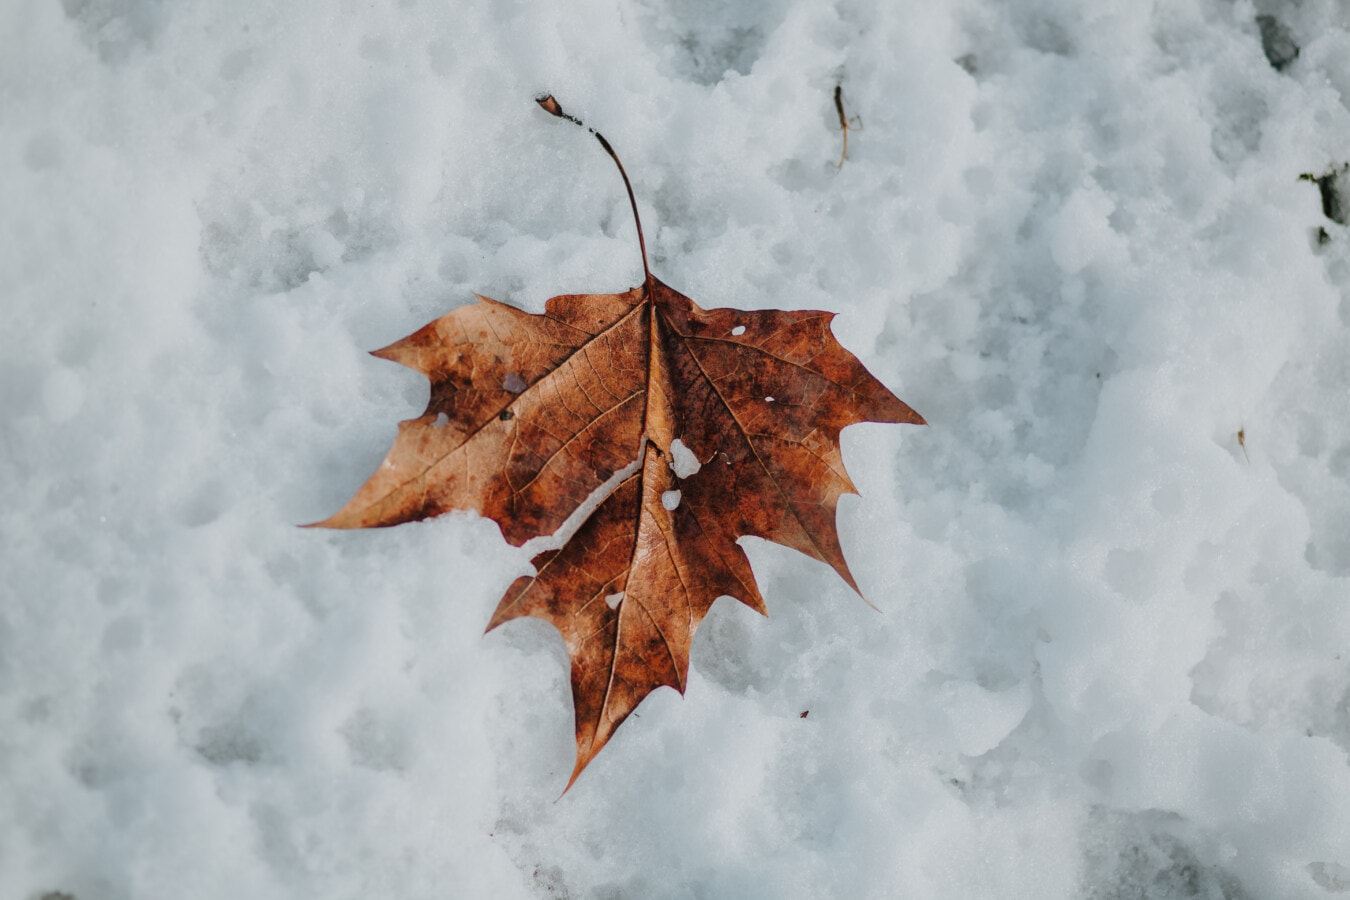 ใบไม้, แช่แข็ง, น้ำตาลอ่อน, หิมะ, หนาว, น้ำแข็ง, ผลึกน้ำแข็ง, หนาว, ฤดูใบไม้ร่วง, เมเปิ้ล